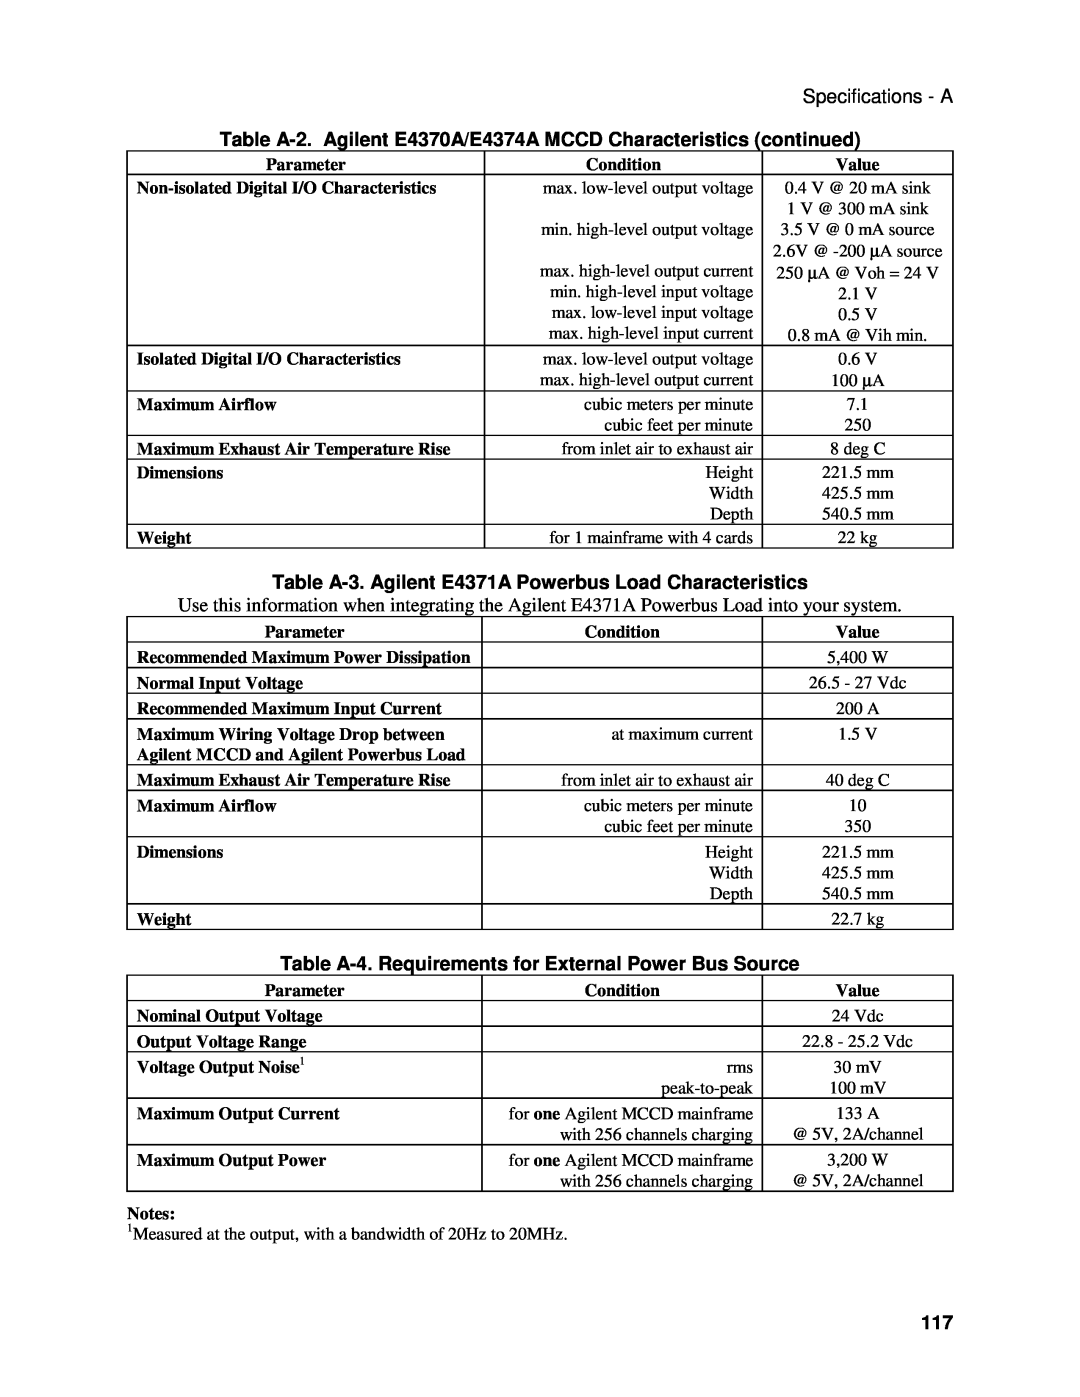 Agilent Technologies E4371A manual Specifications - A, Table A-2. Agilent E4370A/E4374A MCCD Characteristics continued 